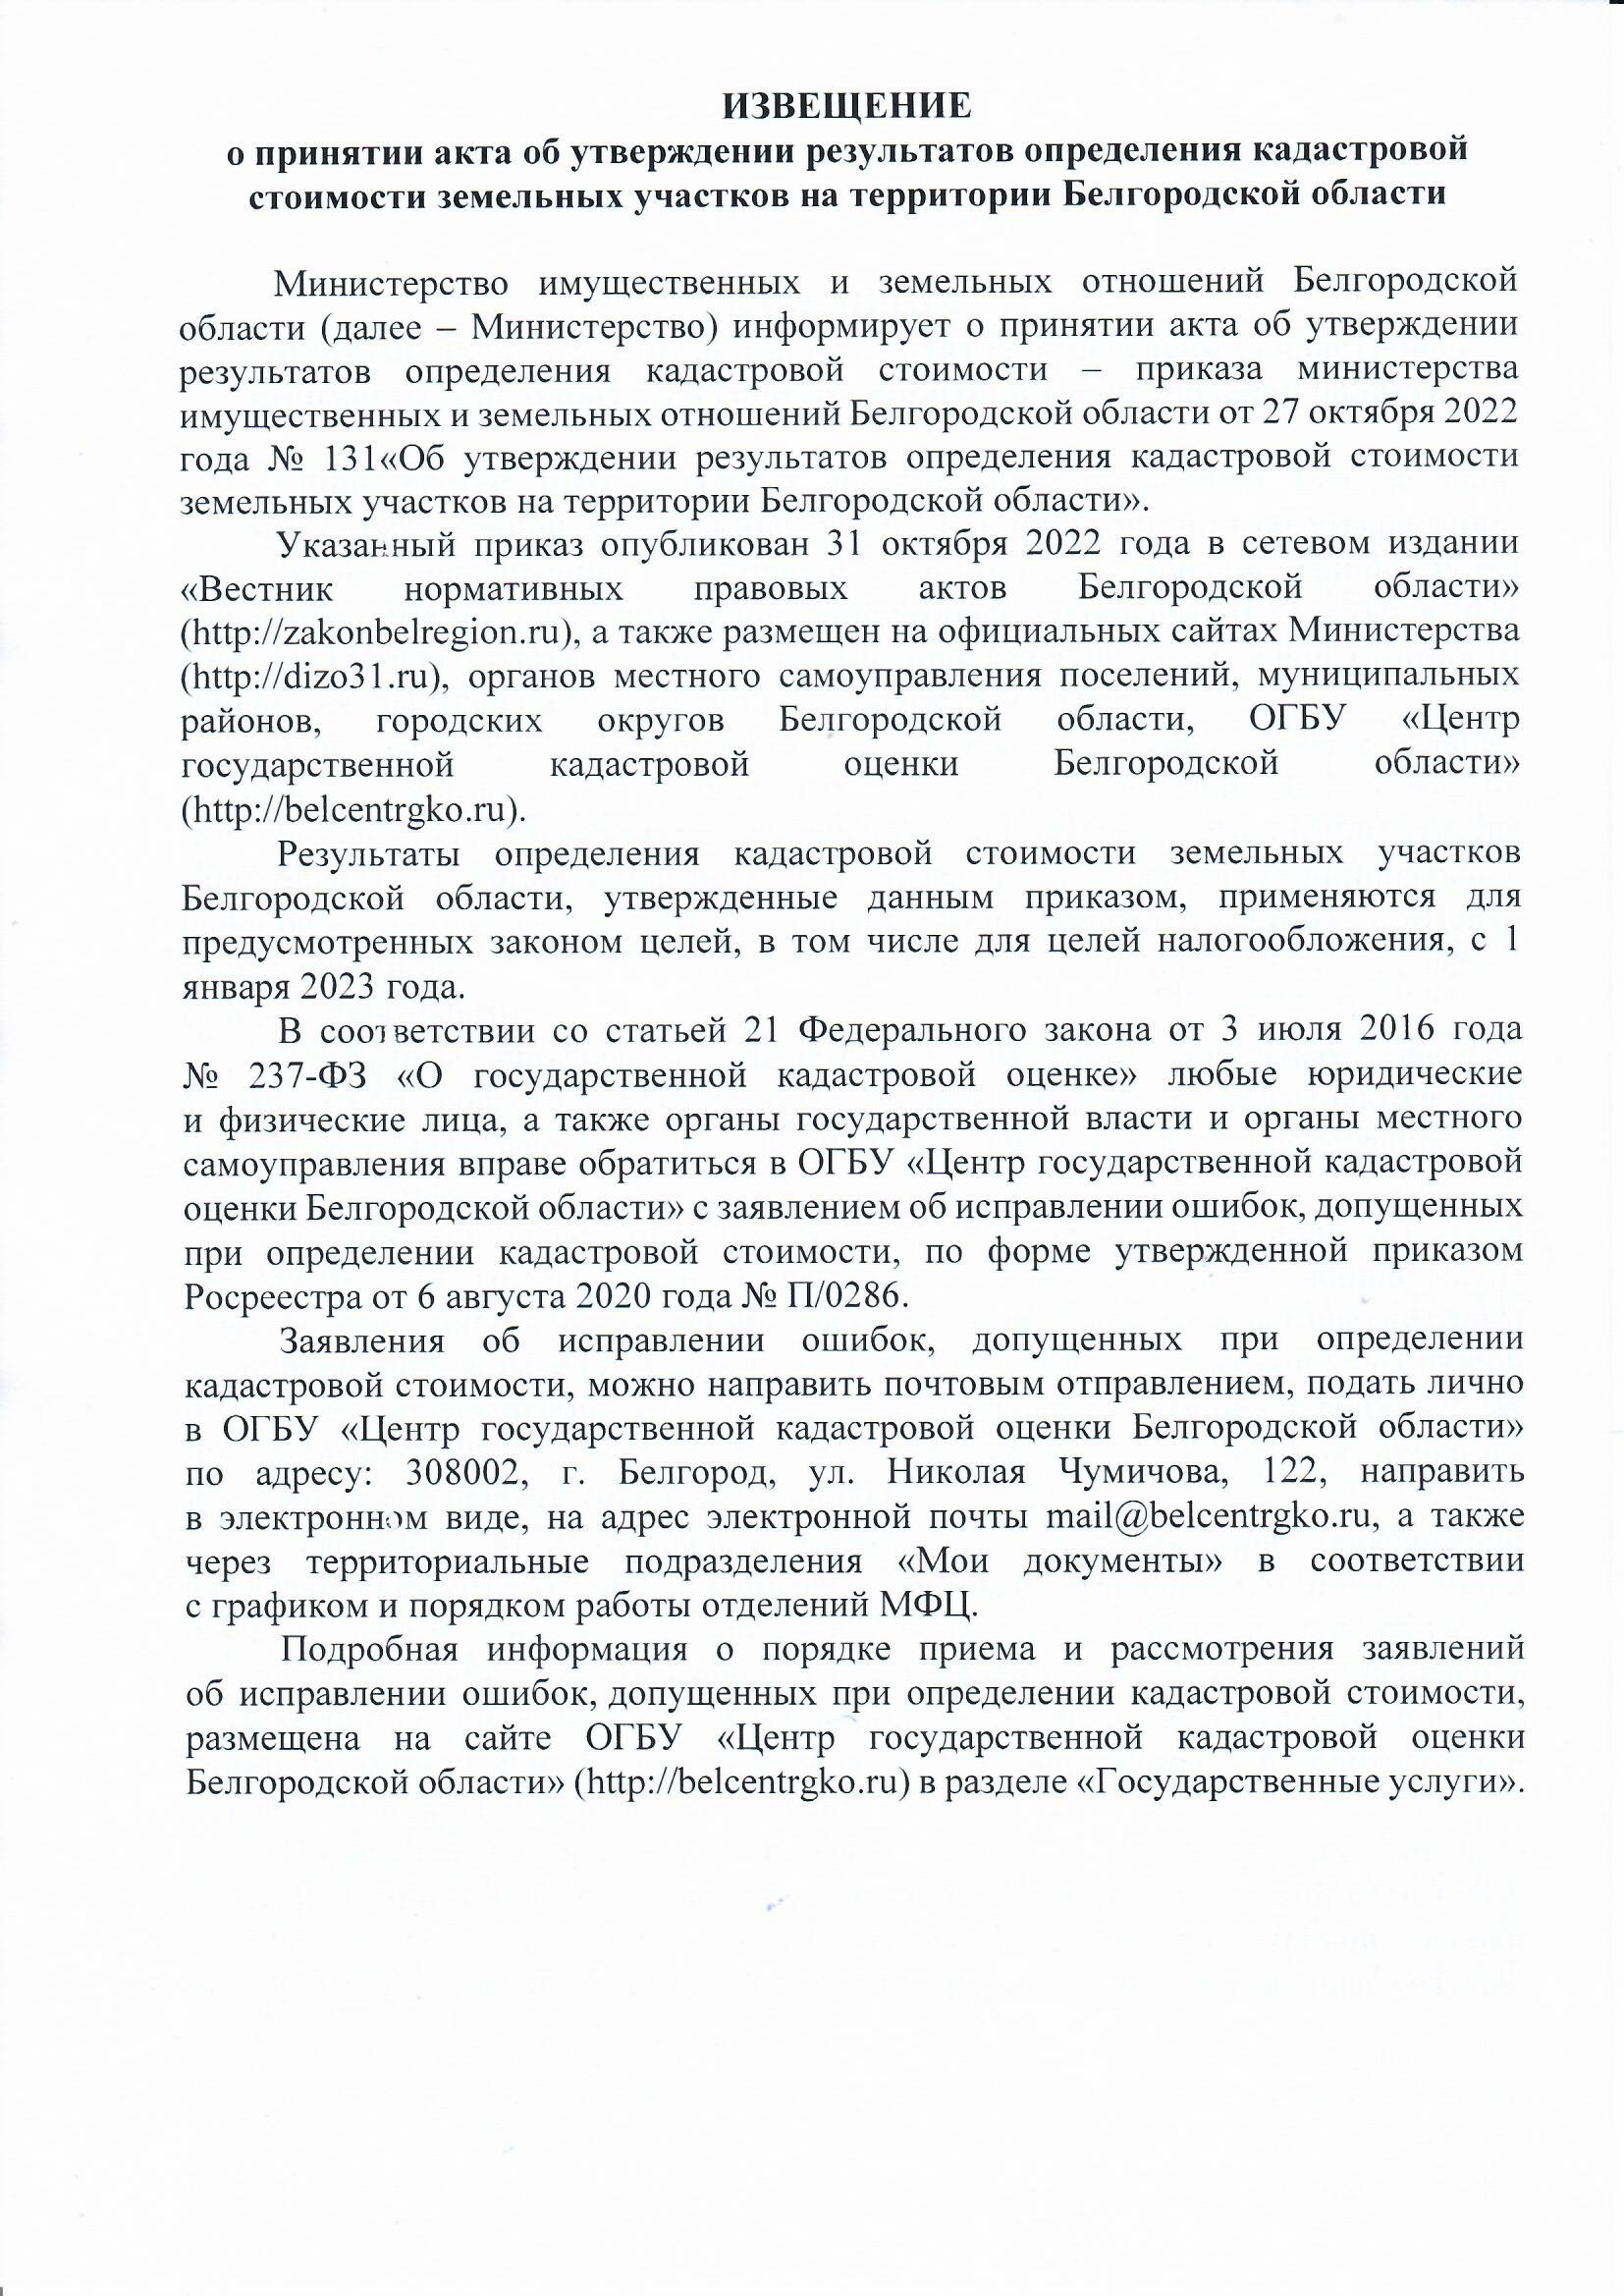 Извищение о принятии акта об утверждении результатов определения кадастровой стоимости з/у на территории Белгородской области.